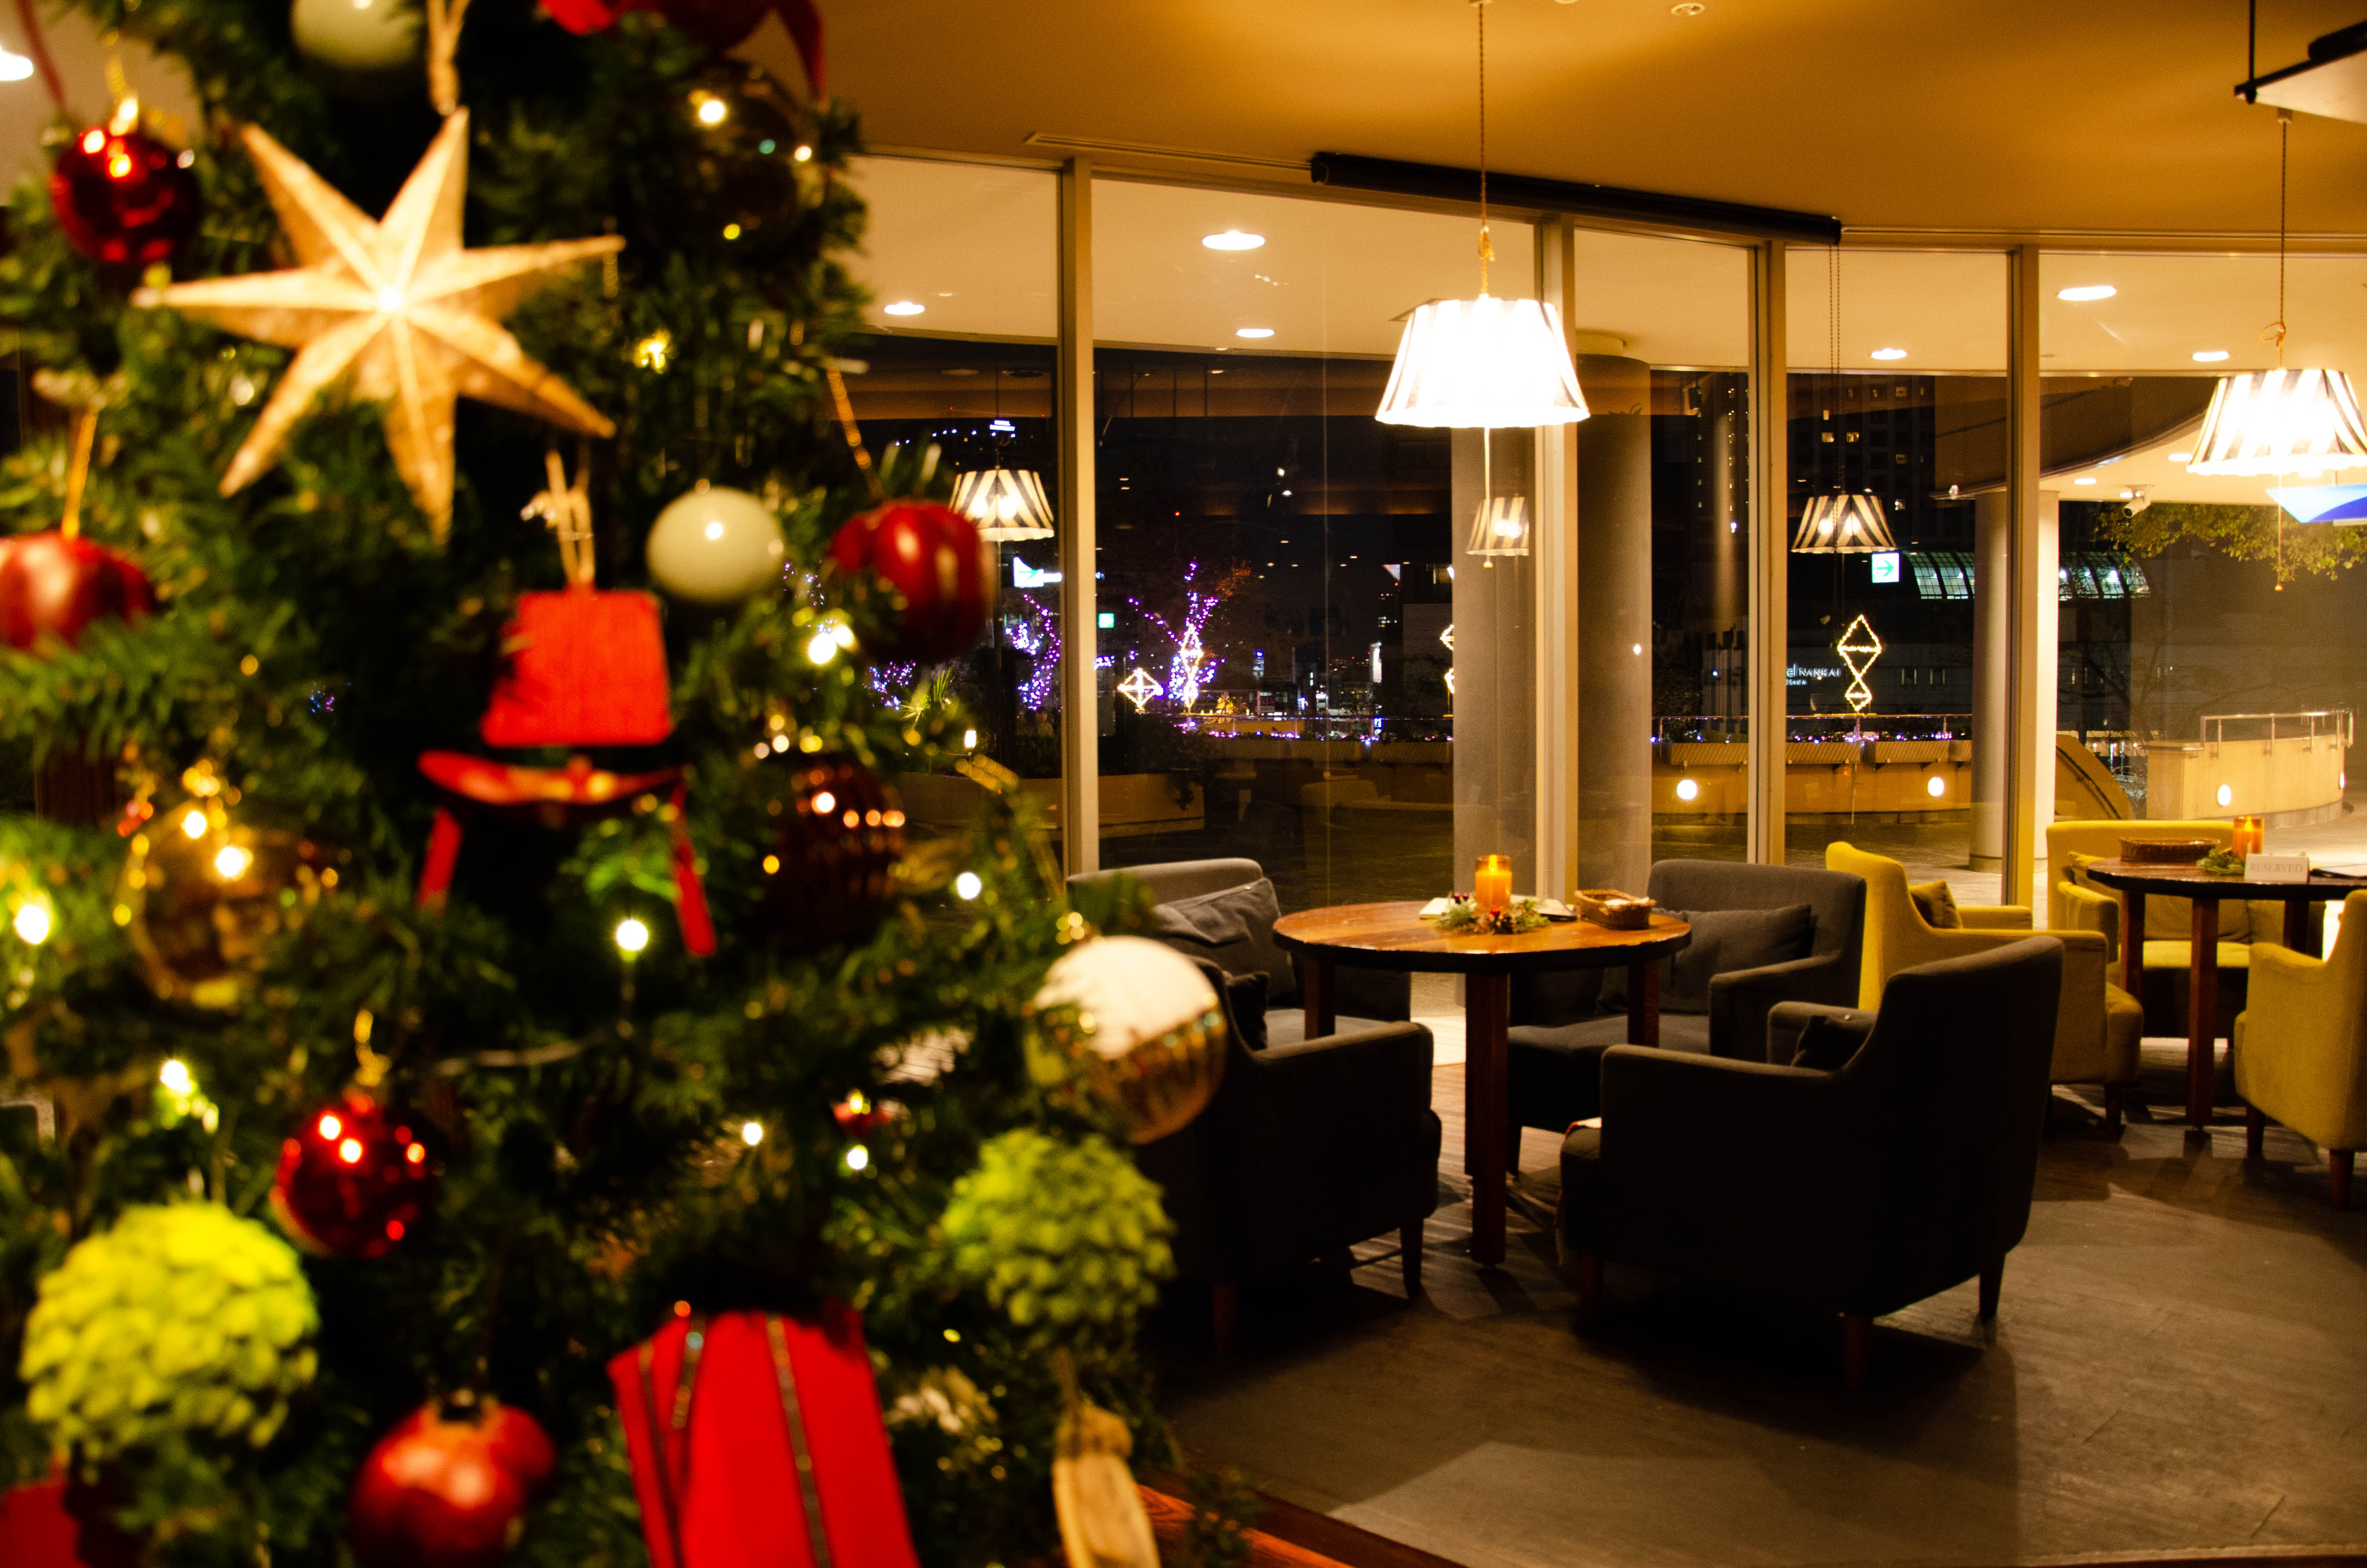 大阪 今からでも間に合うクリスマスディナー なんばパークスのイルミネーションを眺めながらクリスマスディナー を楽しめる限定コースを予約受付中 株式会社エスエルディーのプレスリリース